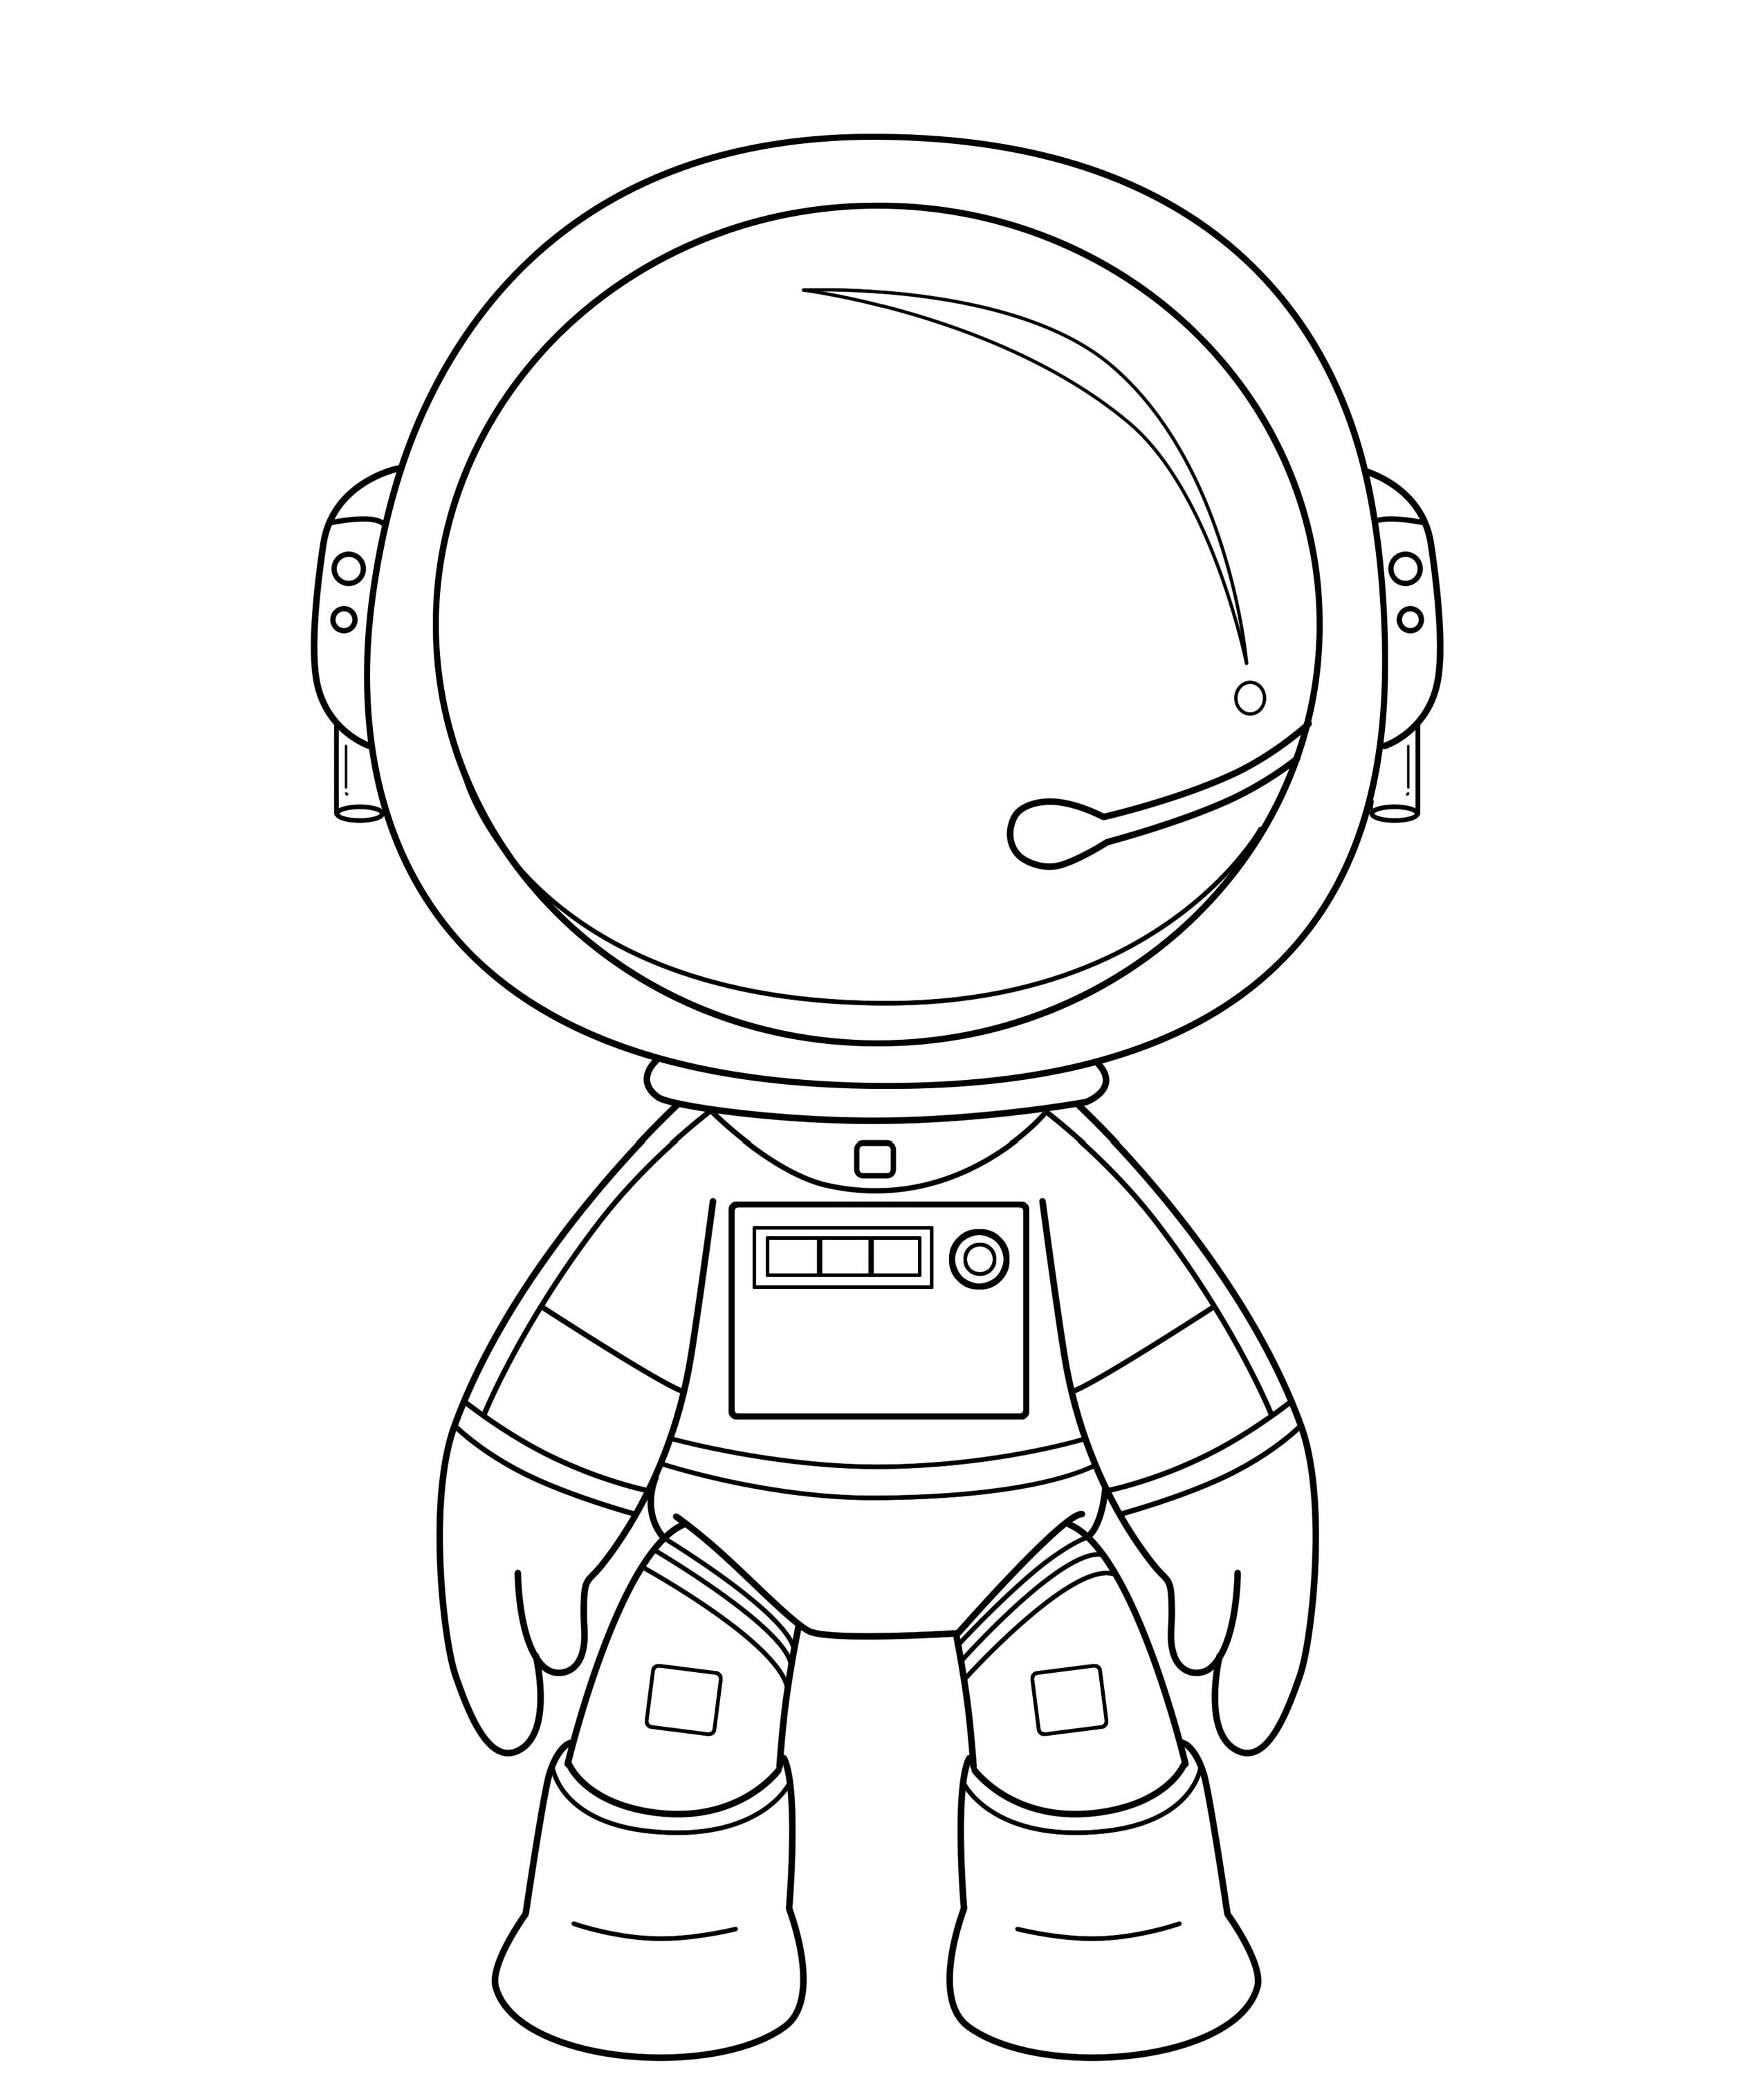 Шаблон шлема космонавта для фотосессии